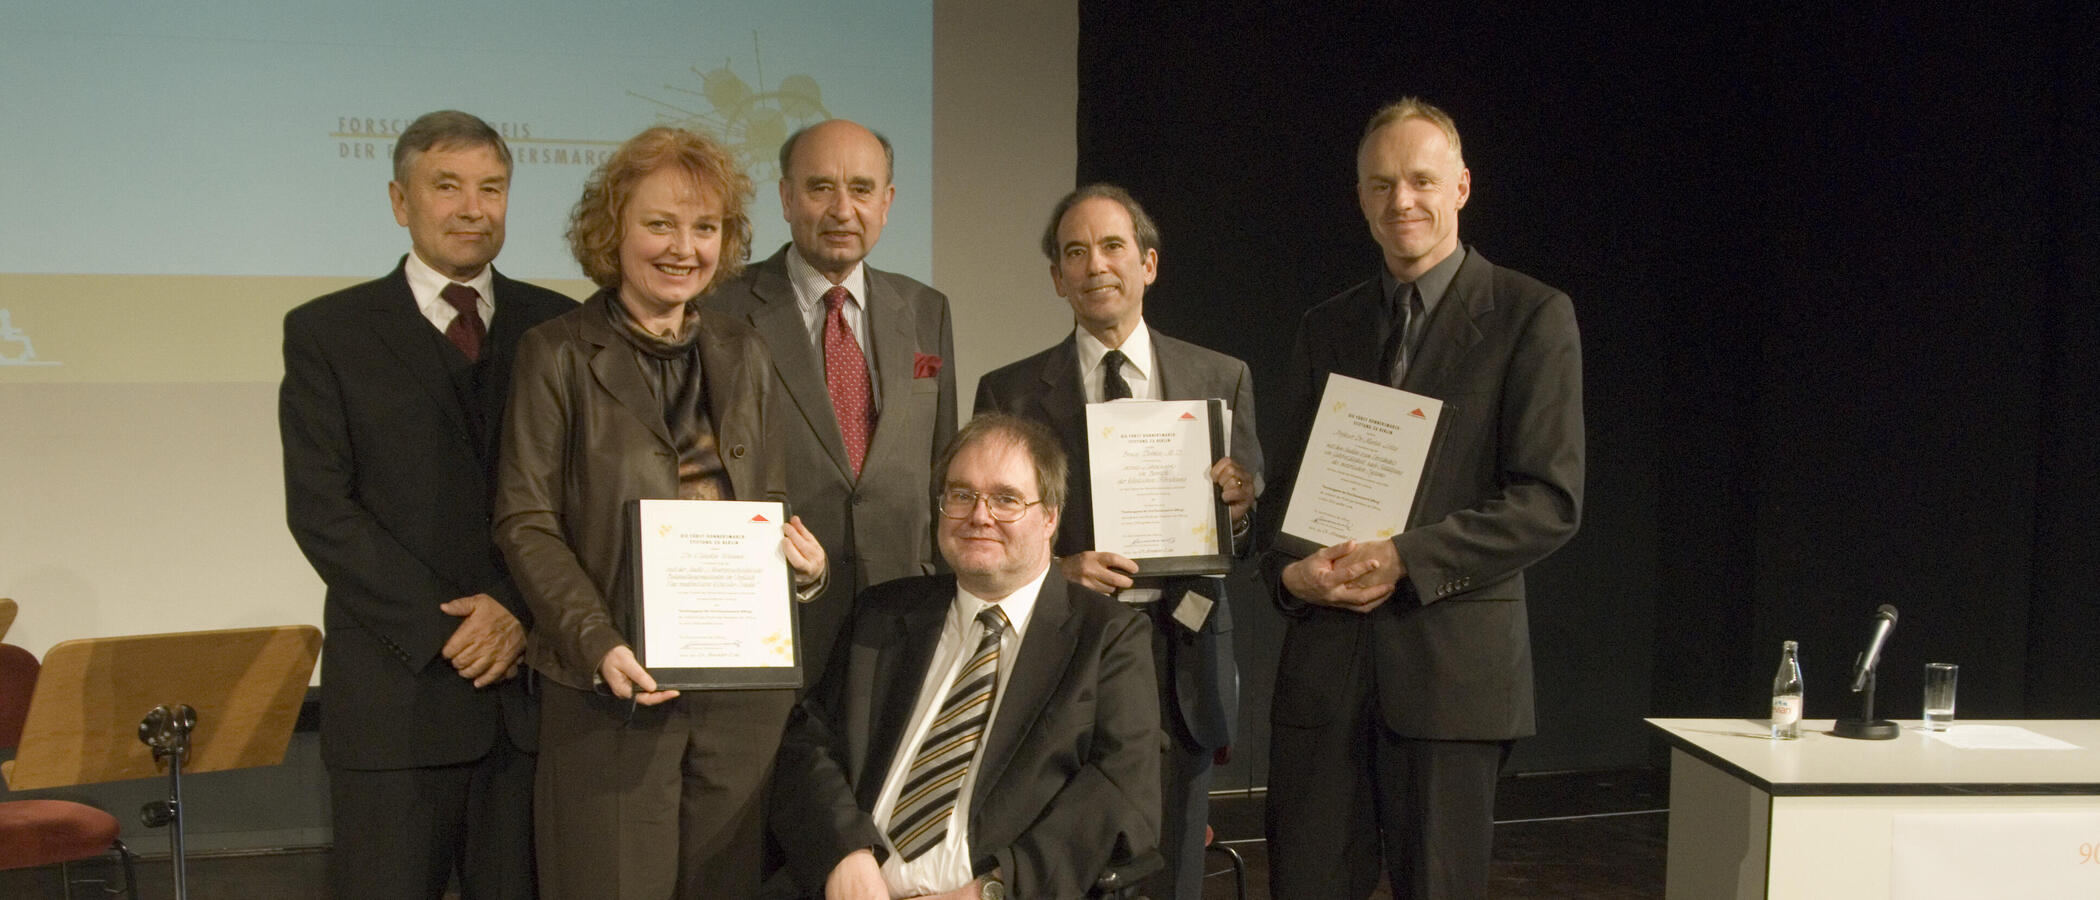 Gruppenfoto mit den Preistragenden bei der Forschungspreisverleihung 2006.